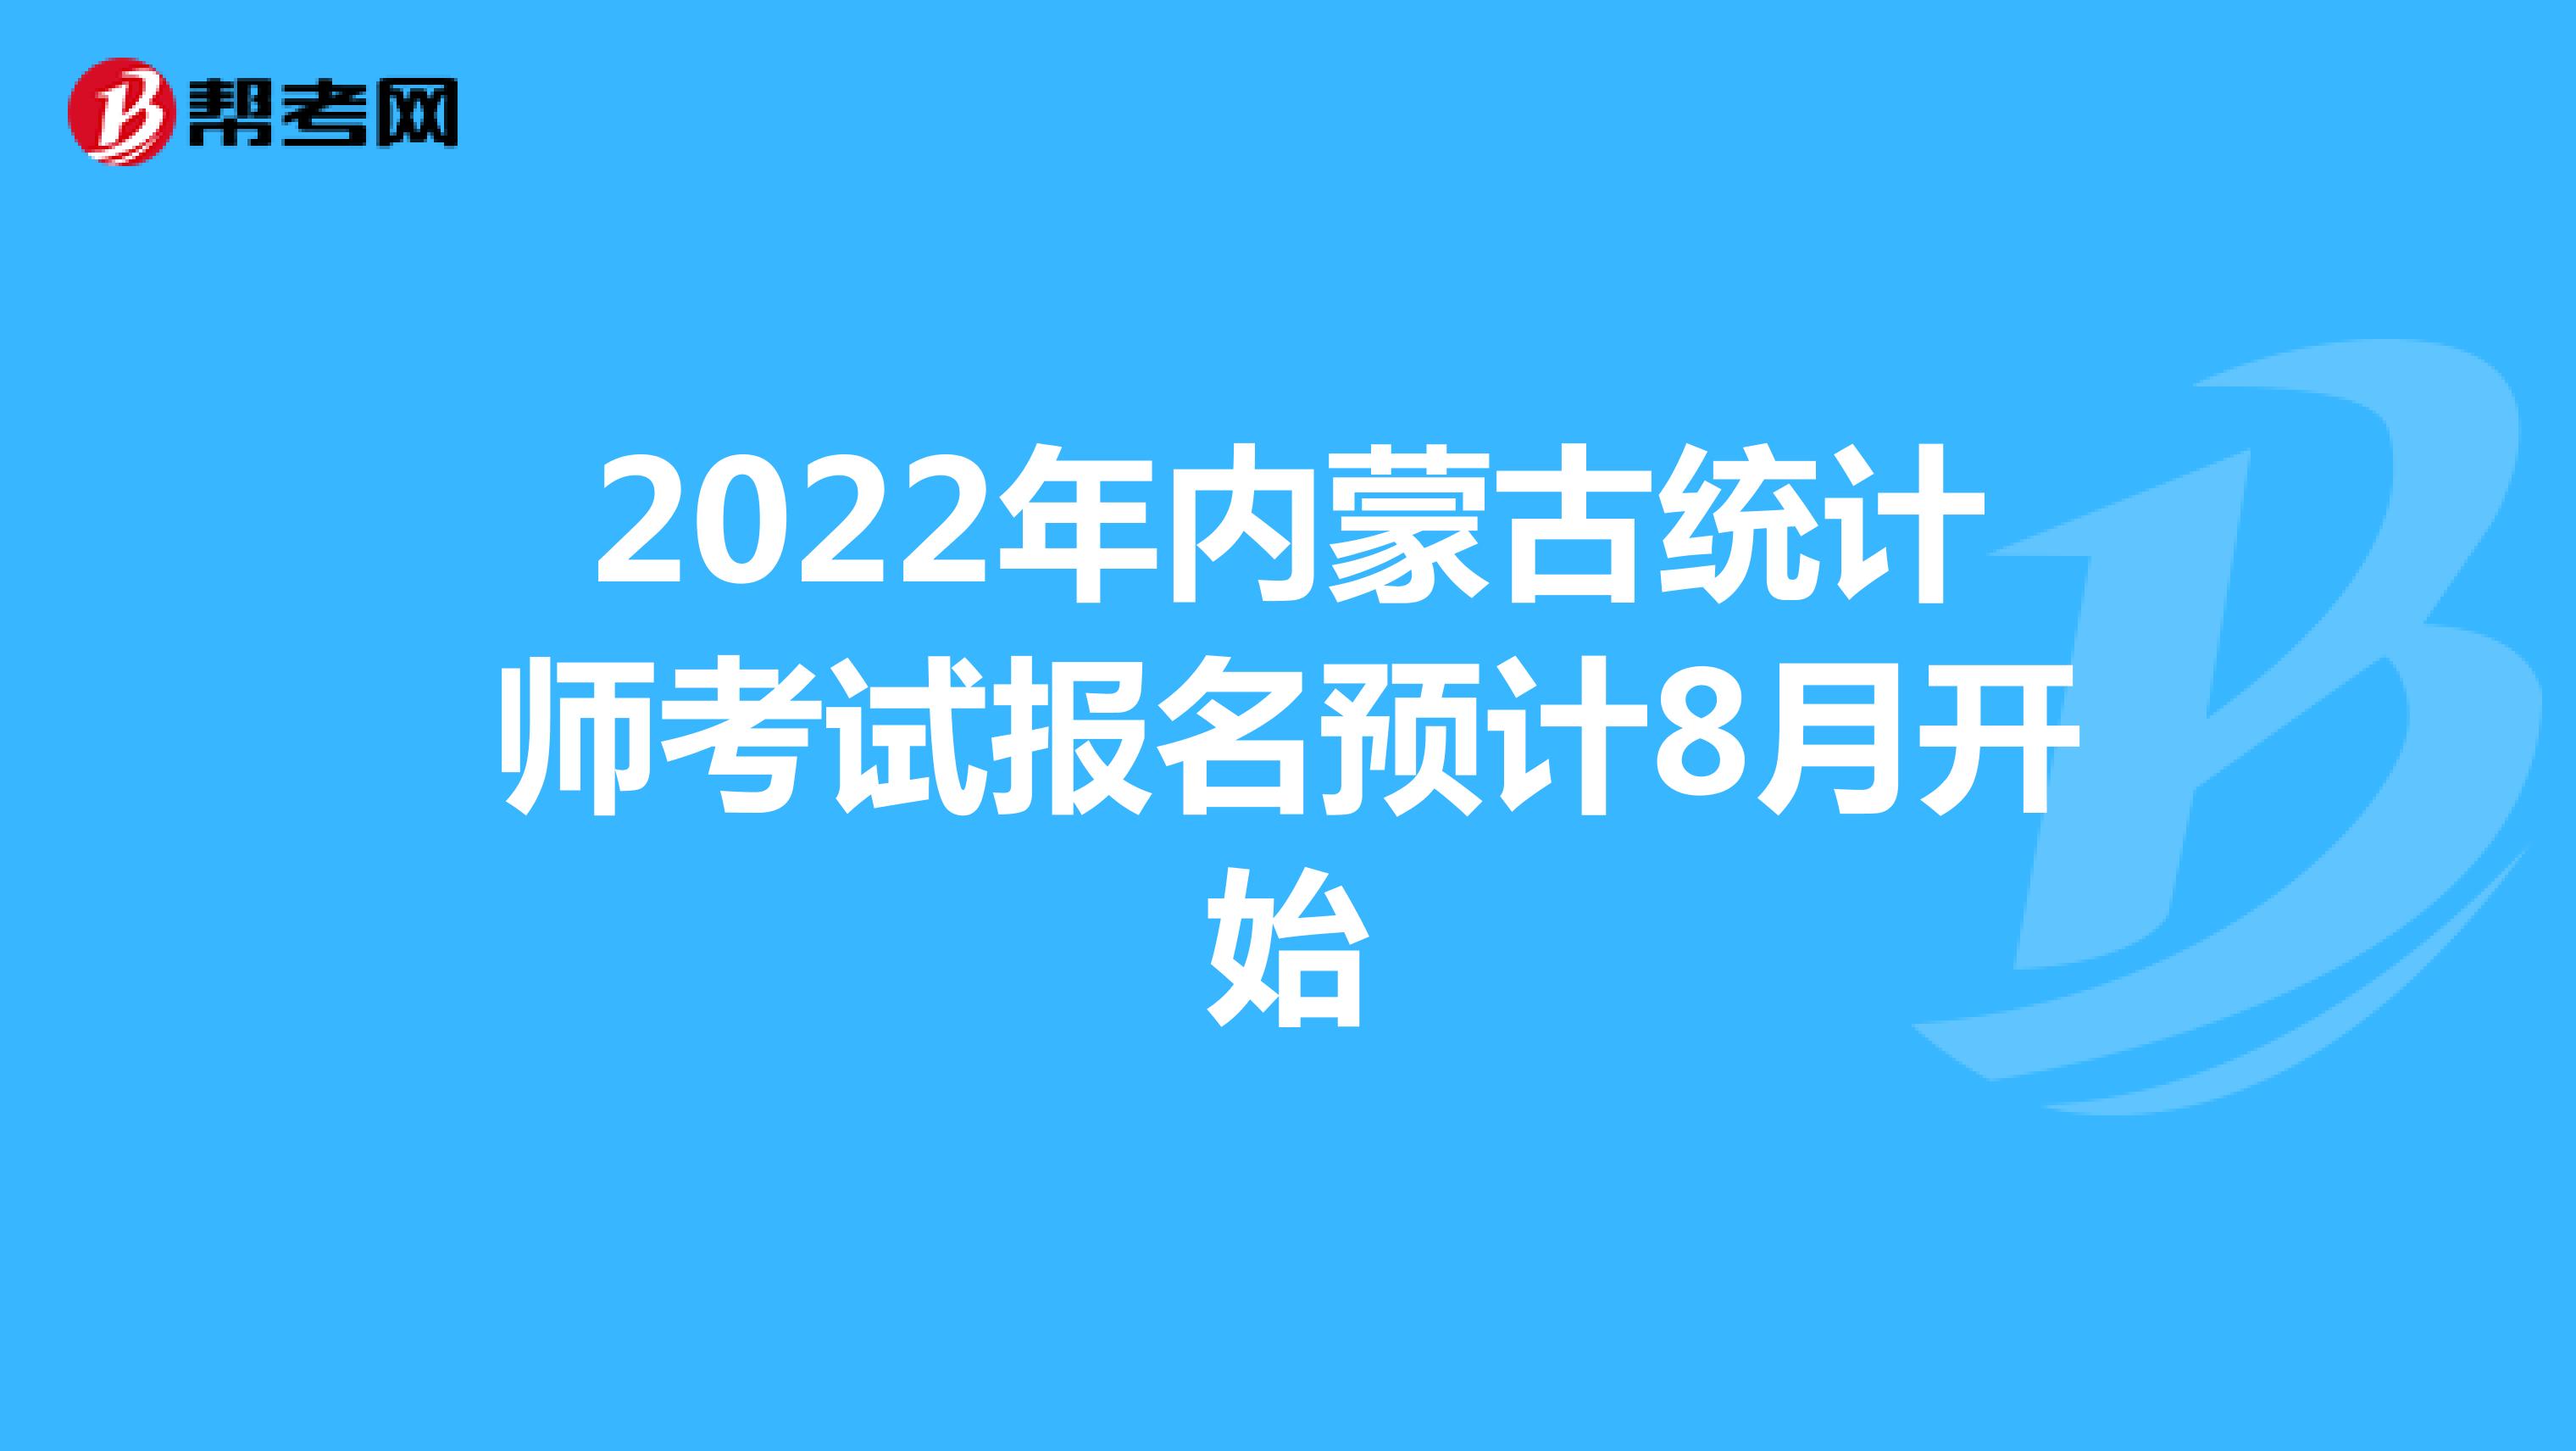 2022年内蒙古统计师考试报名预计8月开始